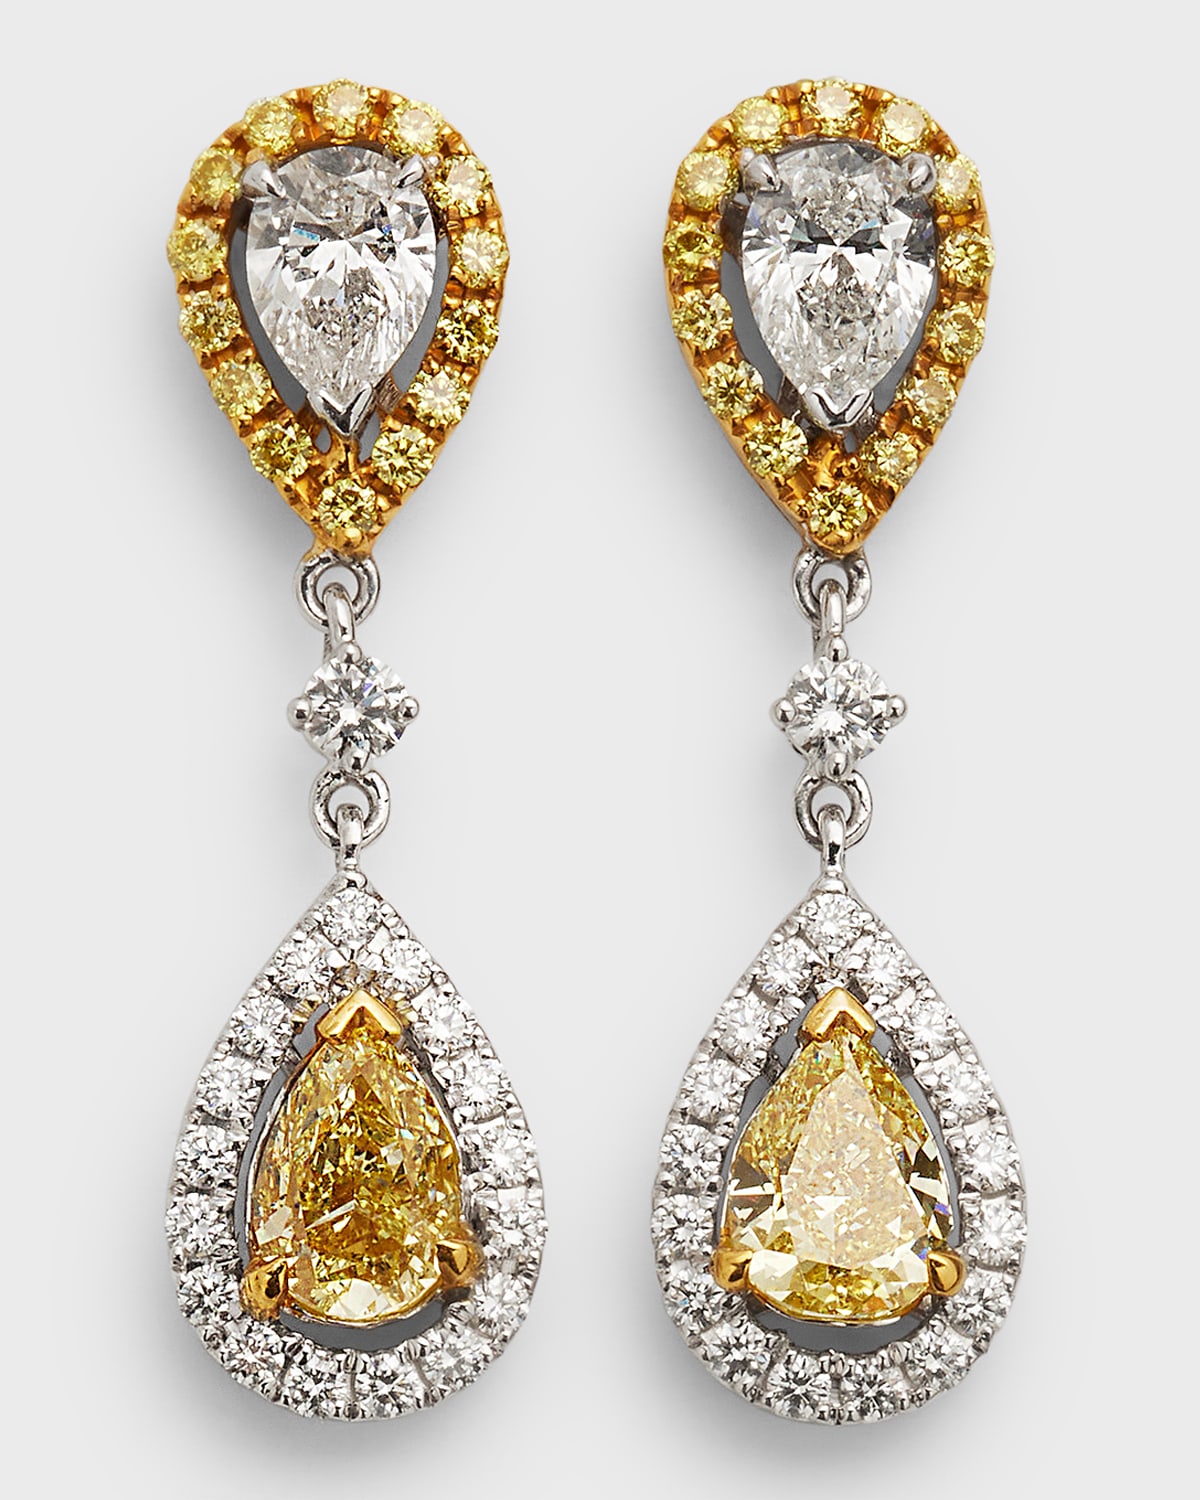 Double Drop GH/VS1  Diamond Earrings